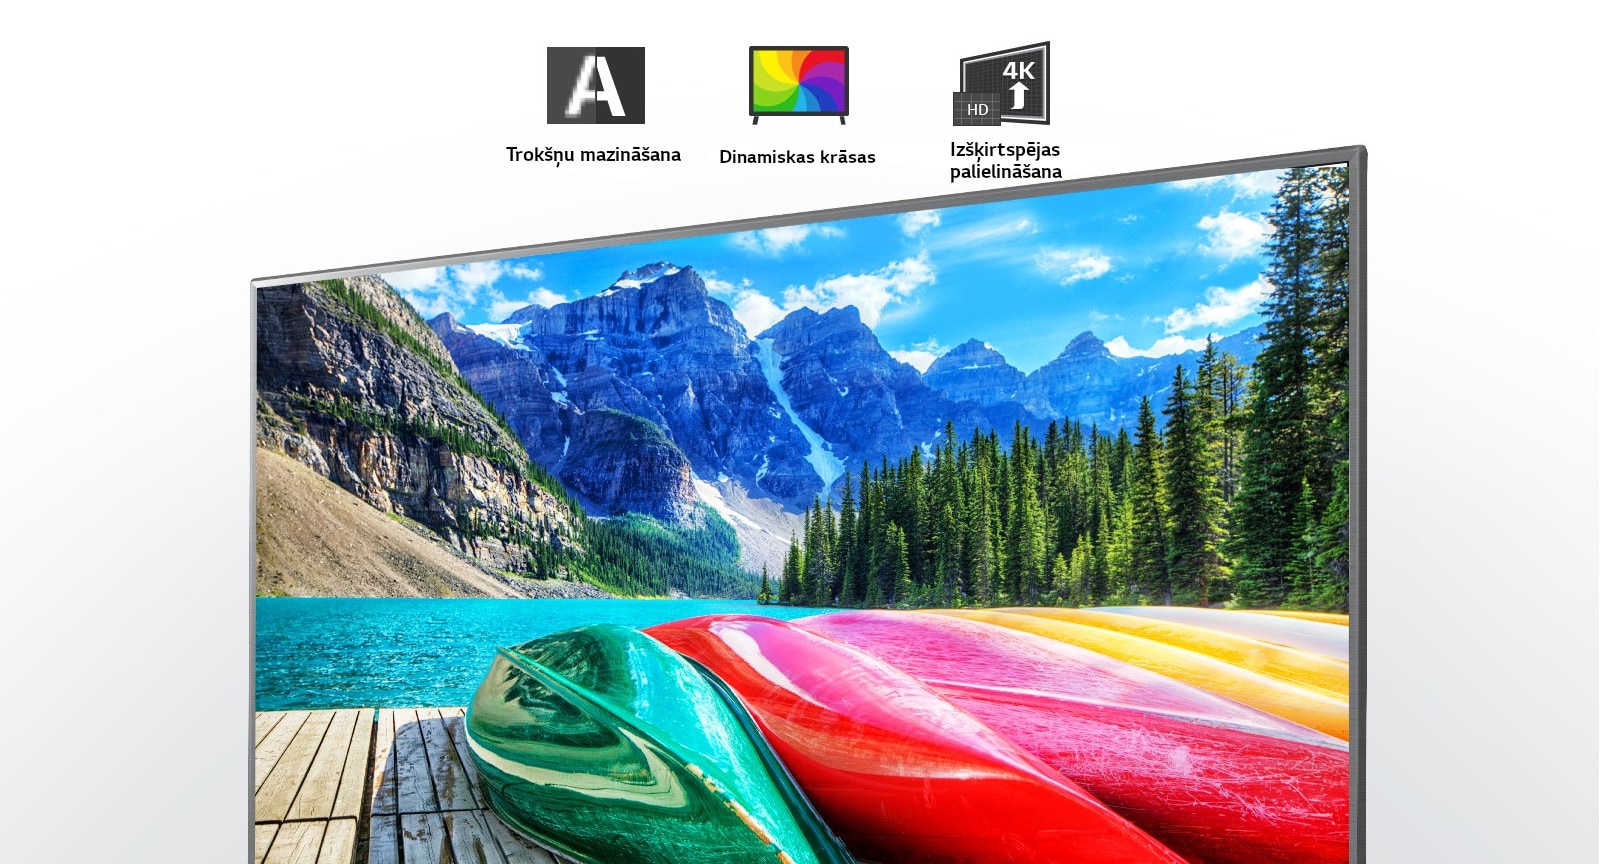 Trokšņu mazināšanas, dinamisku krāsu un izšķirtspējas palielināšanas ikonas un televizora ekrāns, kurā redzams gleznains skats ar kalniem, mežu un ezeru.